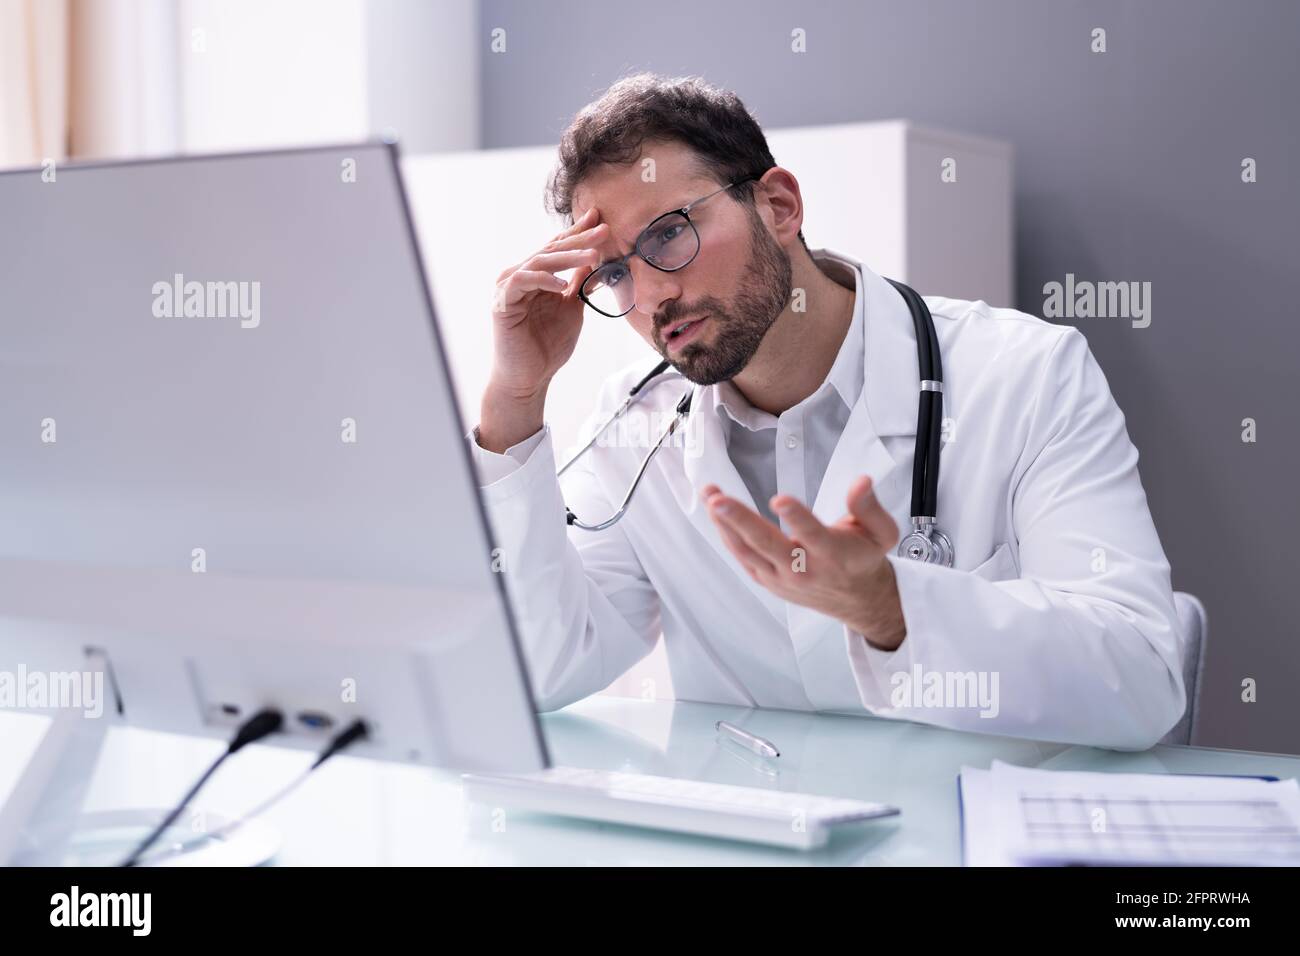 Frustrado doctor en el hospital que trabajaba demasiado mirando la computadora Foto de stock